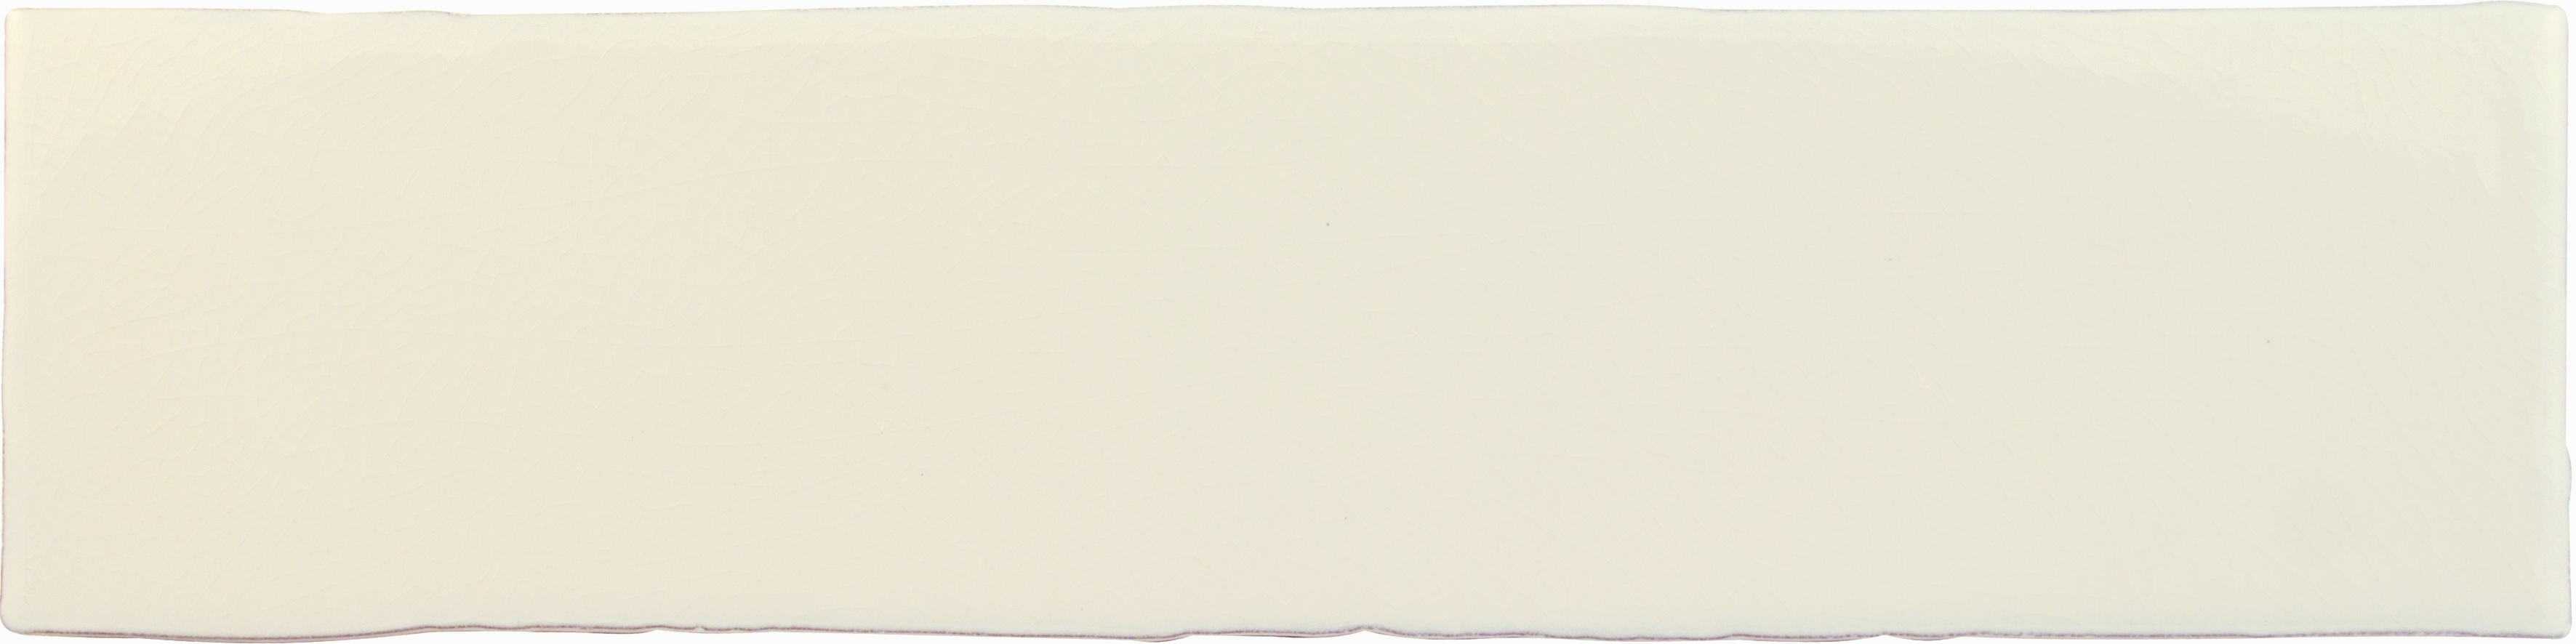 Wandfliese 7,5x30 cm  hellcreme glänzend
Cevica  Alaska  White ( Craquele ) 
Art: A53843